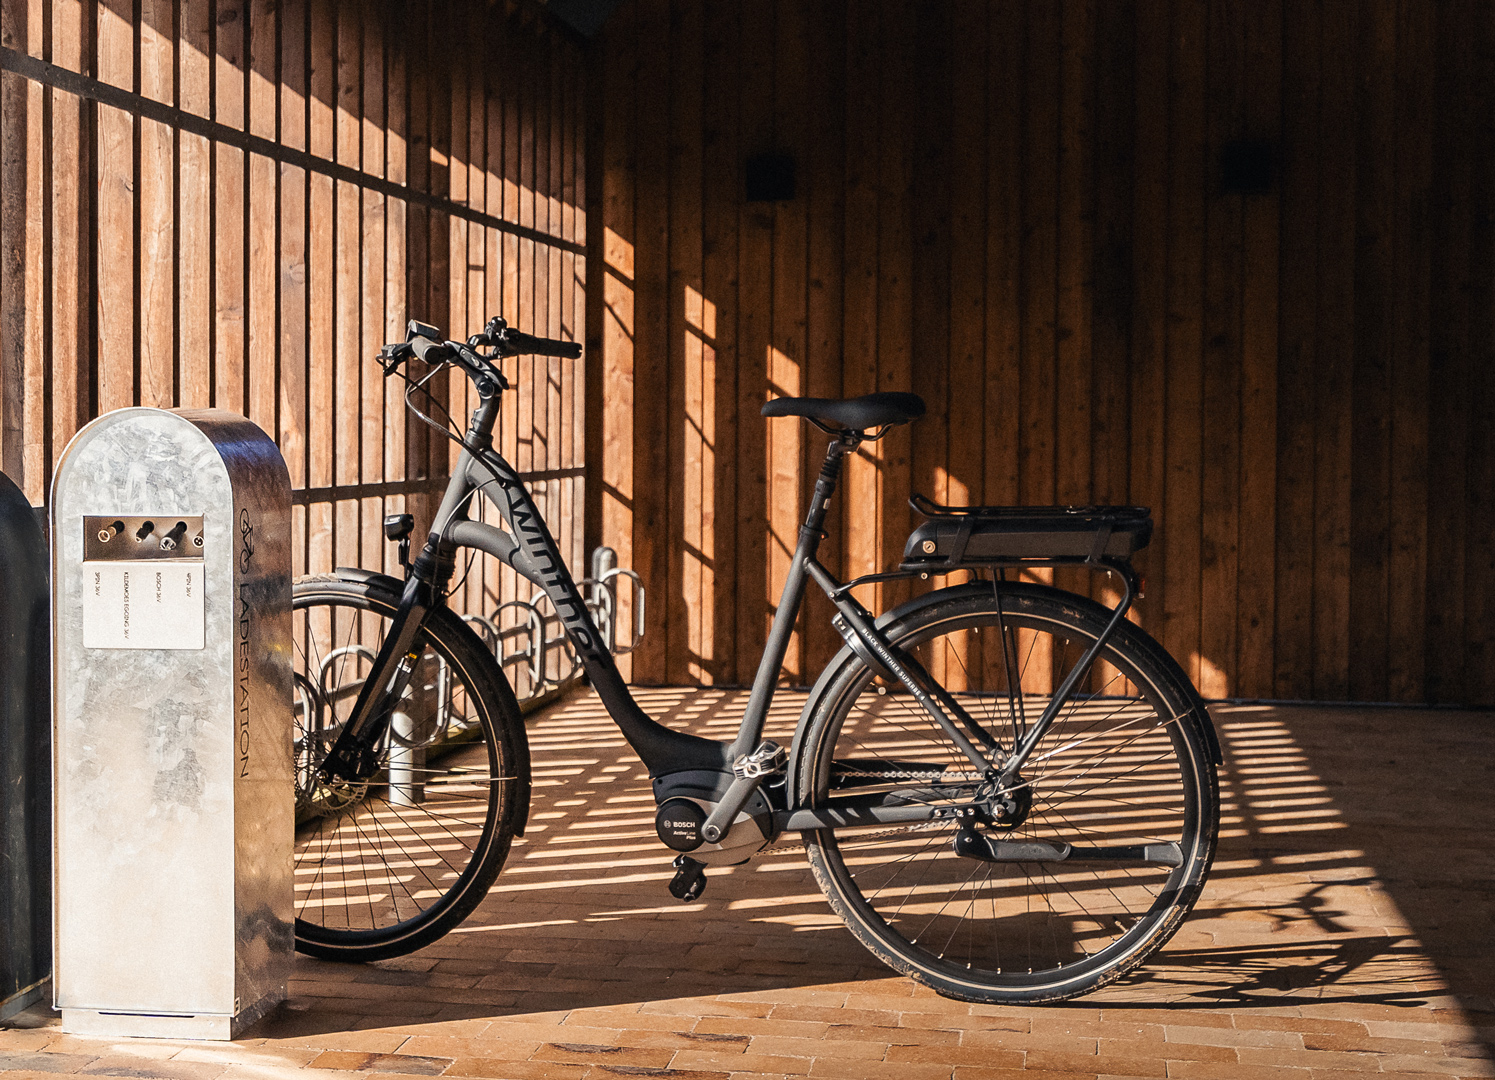 Cykelställ och laddstation för elcyklar ses i kombination